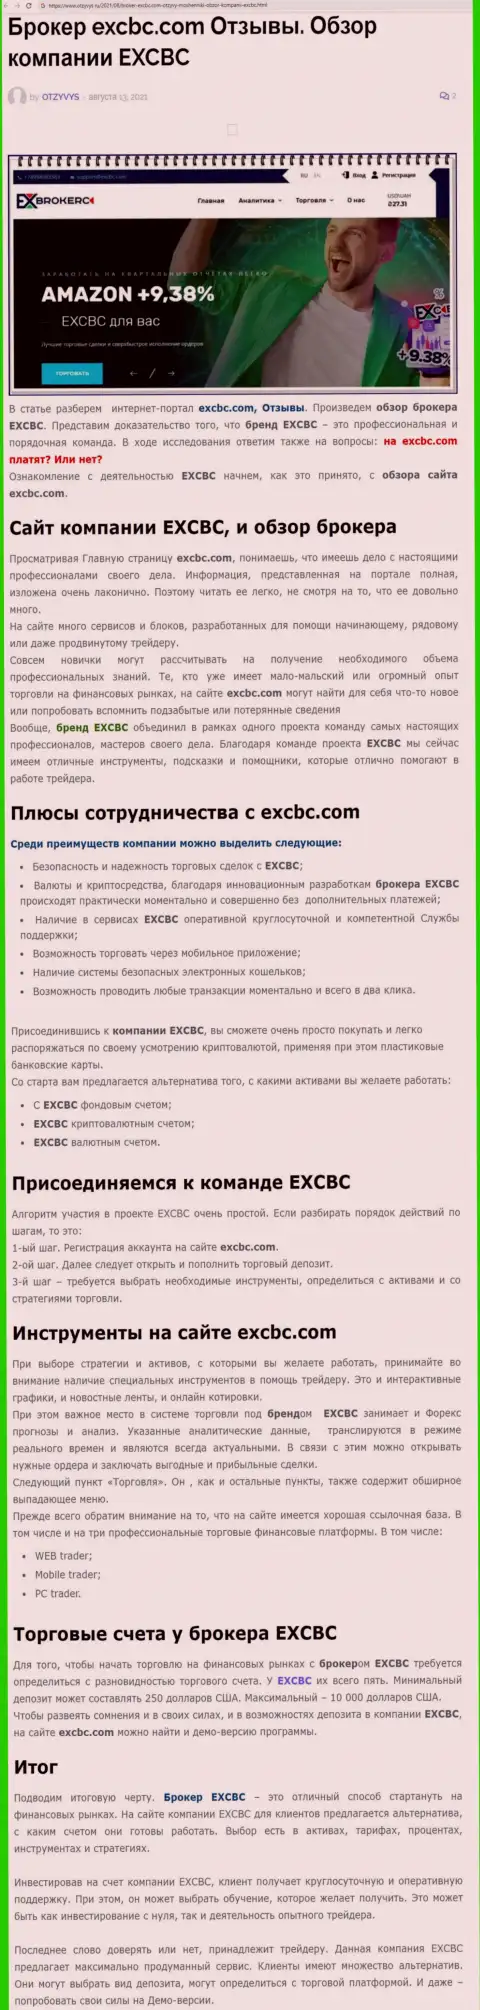 ЕХЧЕНЖБК Лтд Инк - это ответственная и порядочная Forex компания, это следует из статьи на веб-сервисе otzyvys ru